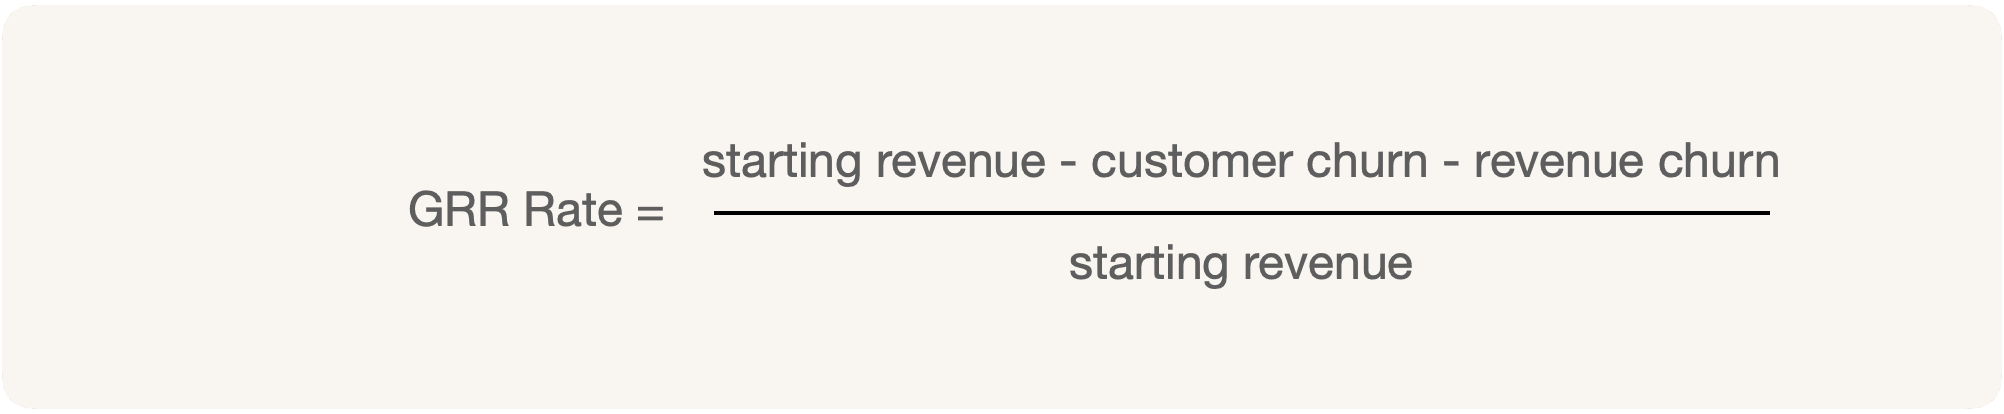 GRR Rate = (starting revenue - customer churn - revenue churn) / starting revenue